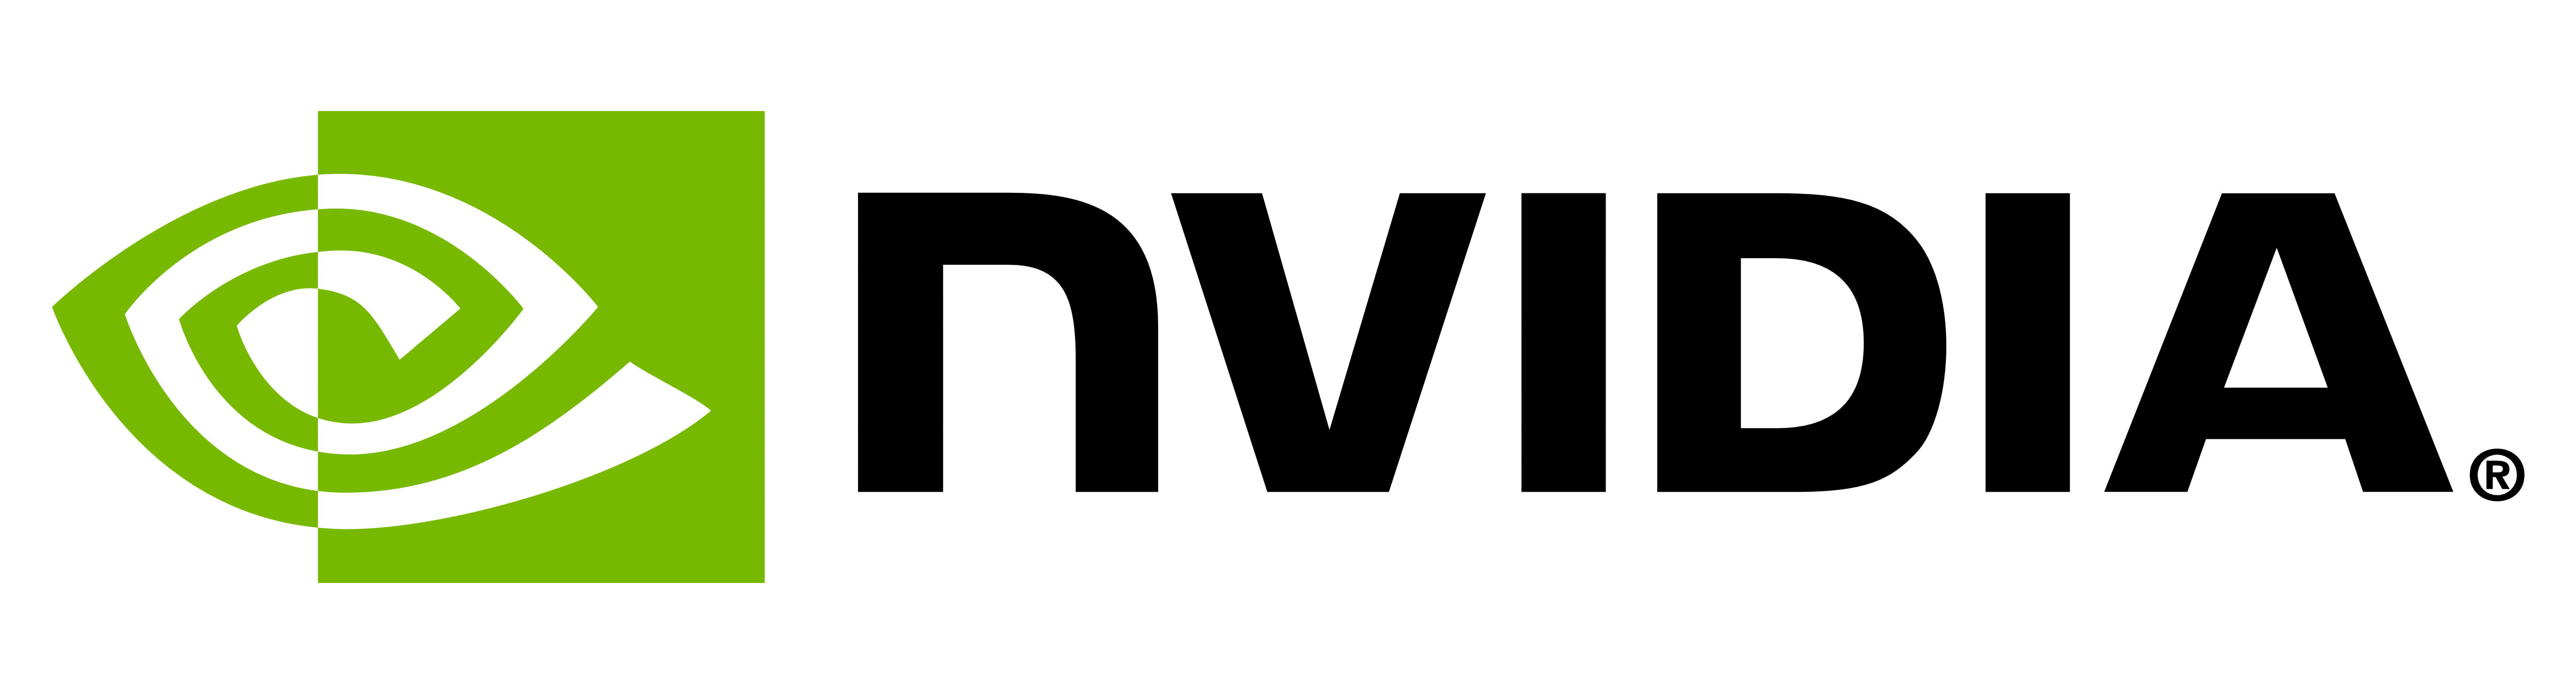 Ý nghĩa logo và biểu tượng NVIDIA | lịch sử và sự tiến hóa